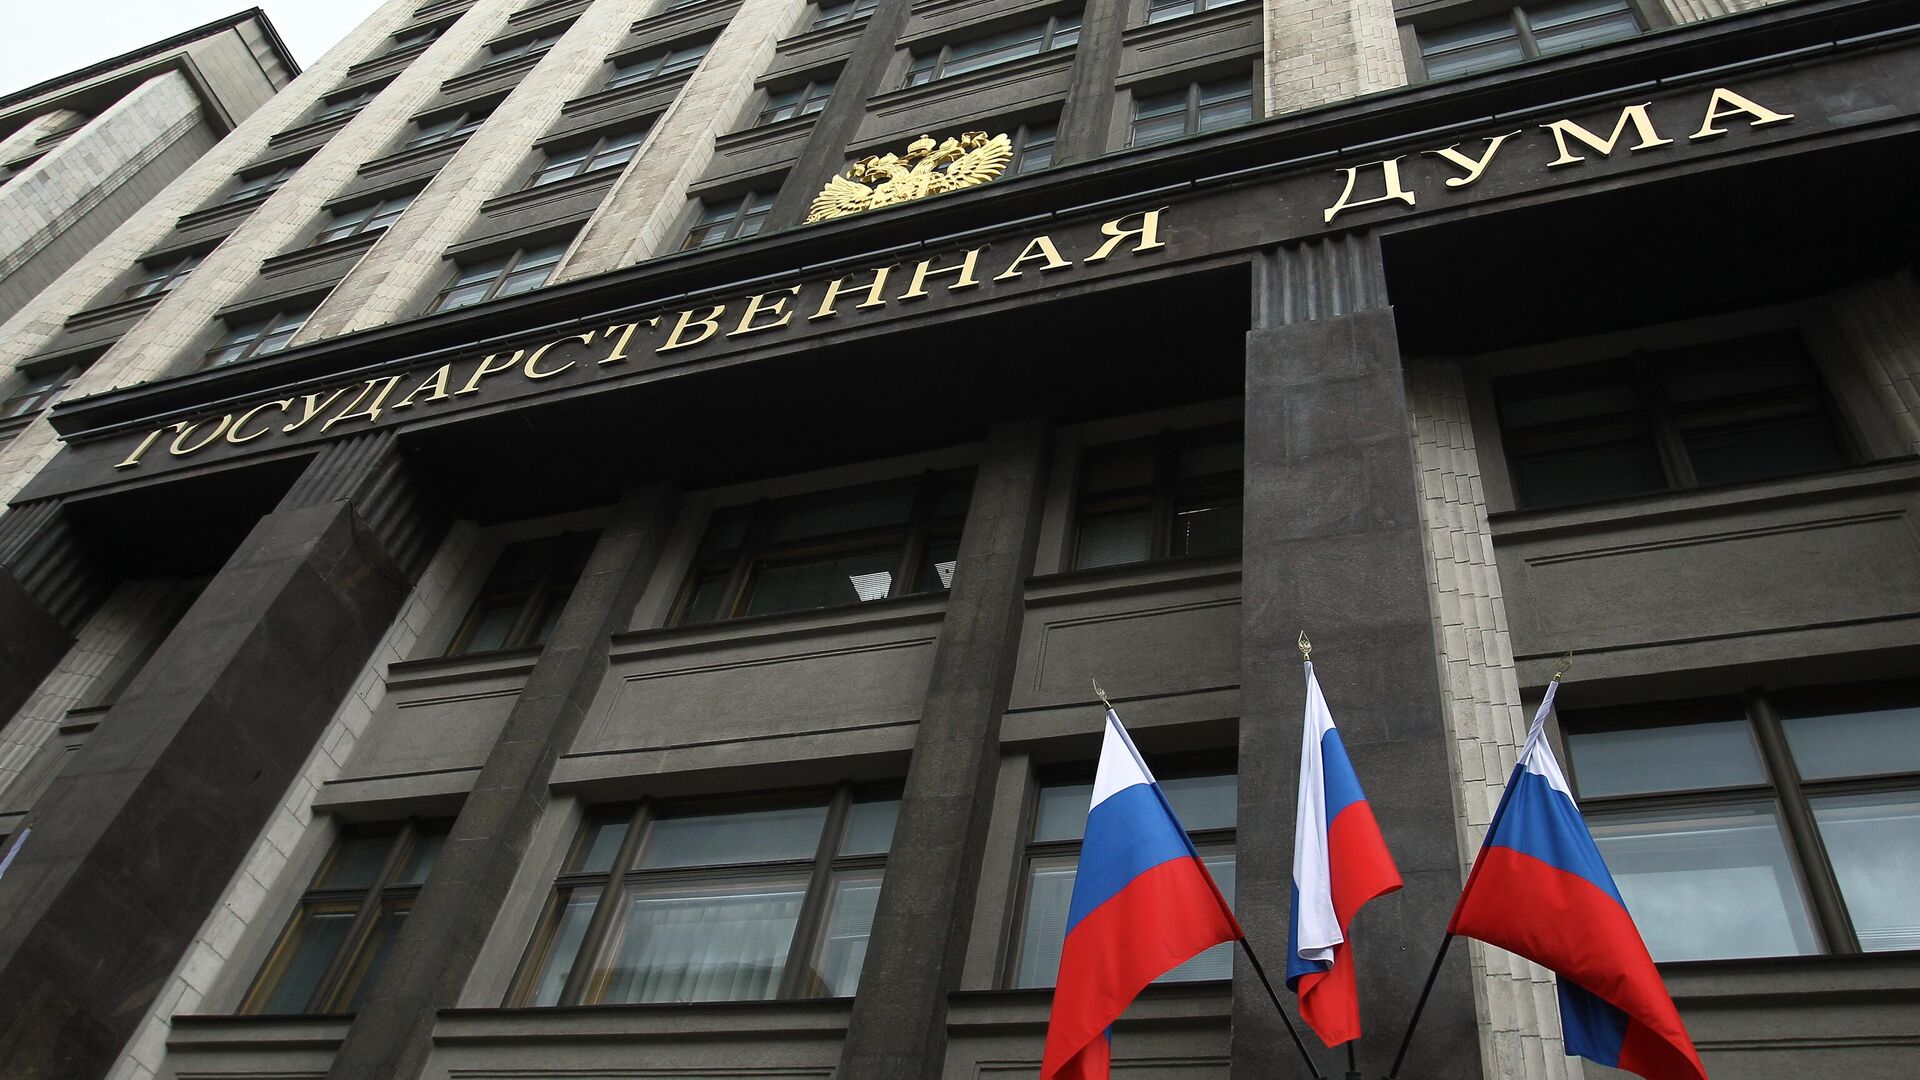 Законопроект о лишении гражданства за тяжкие преступления внесли в Госдуму РФ